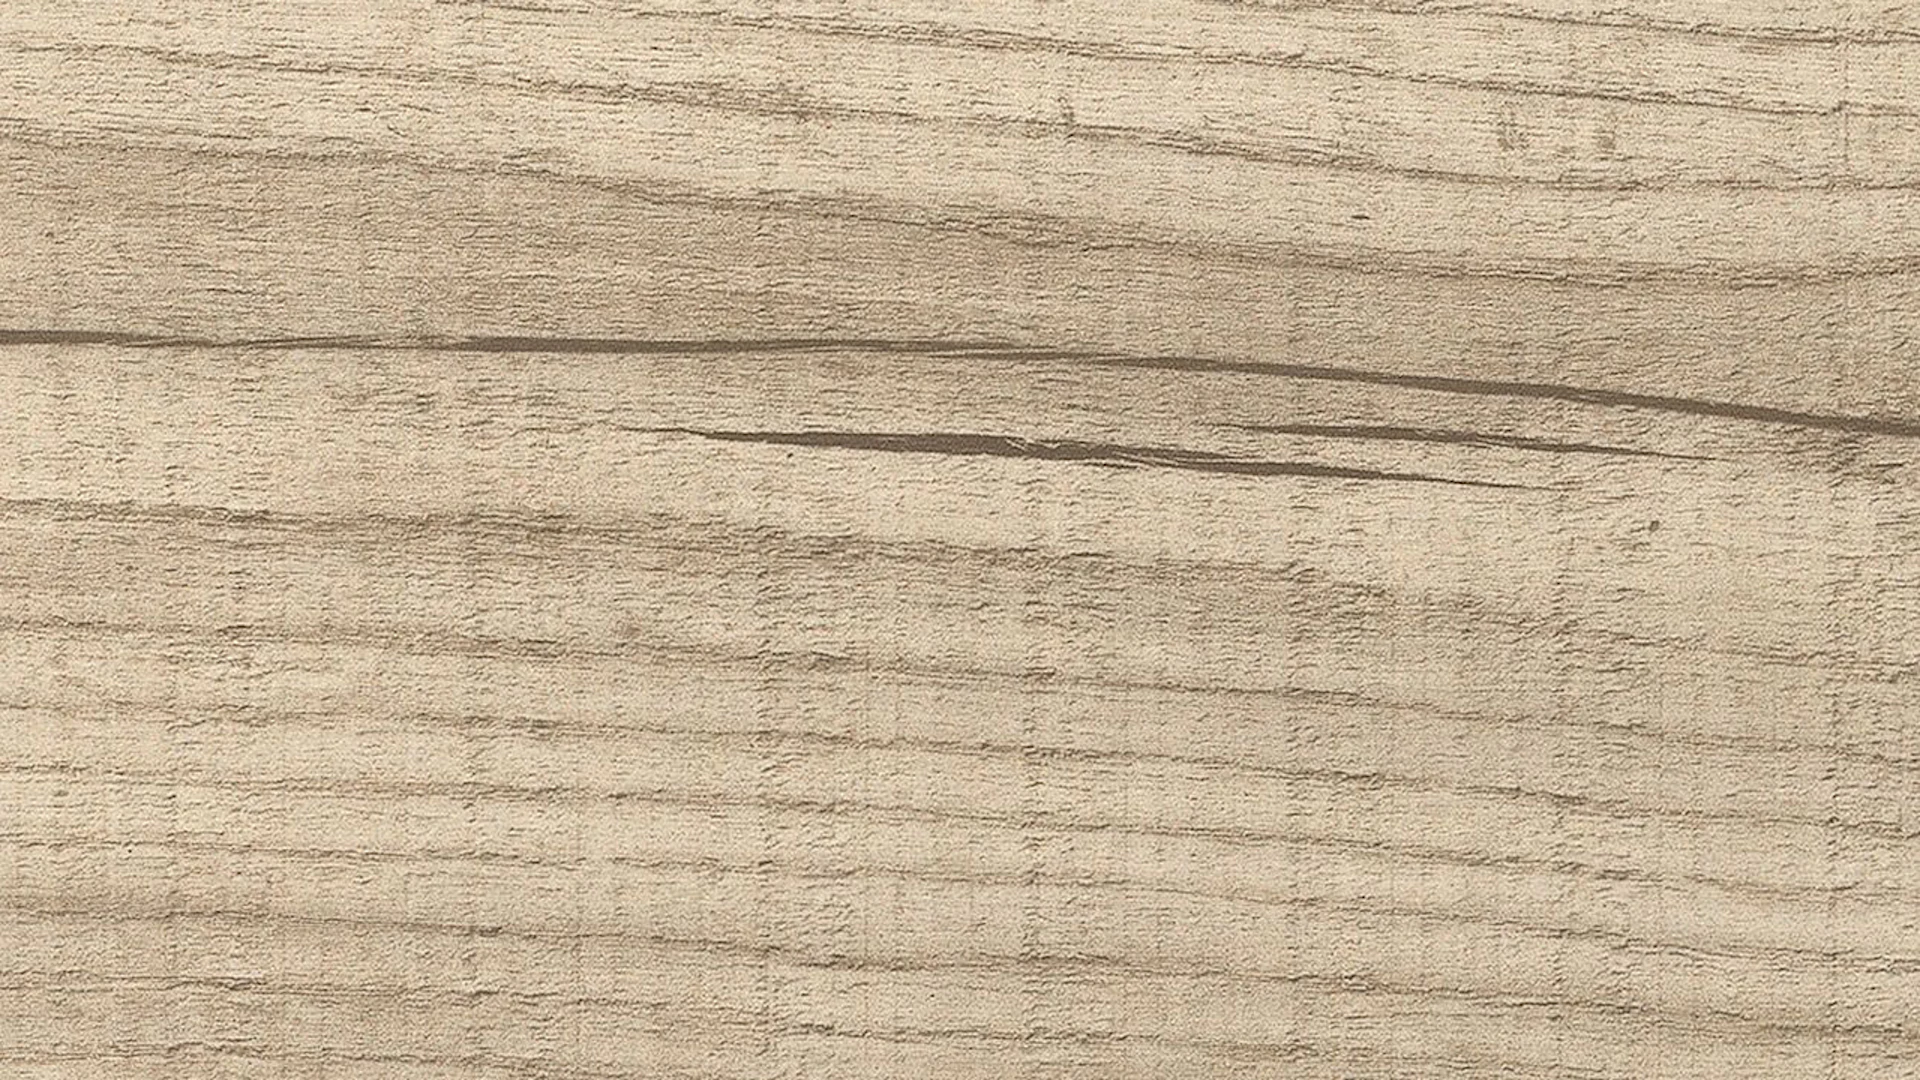 HARO Corkett pavimento in sughero a cliccare Arteo XL Shabby Oak Bianco